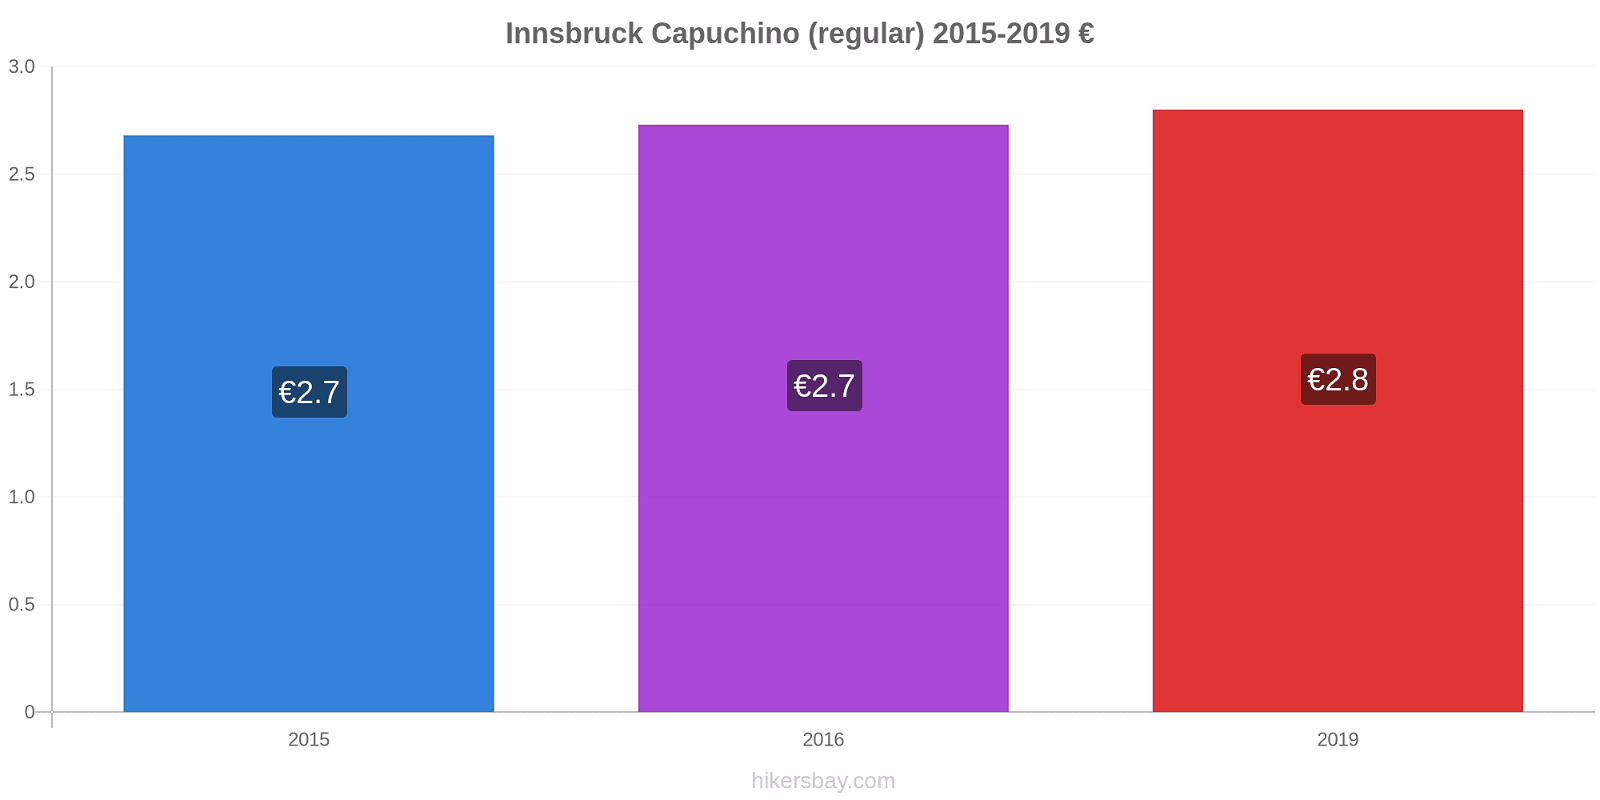 Innsbruck cambios de precios Capuchino (regular) hikersbay.com